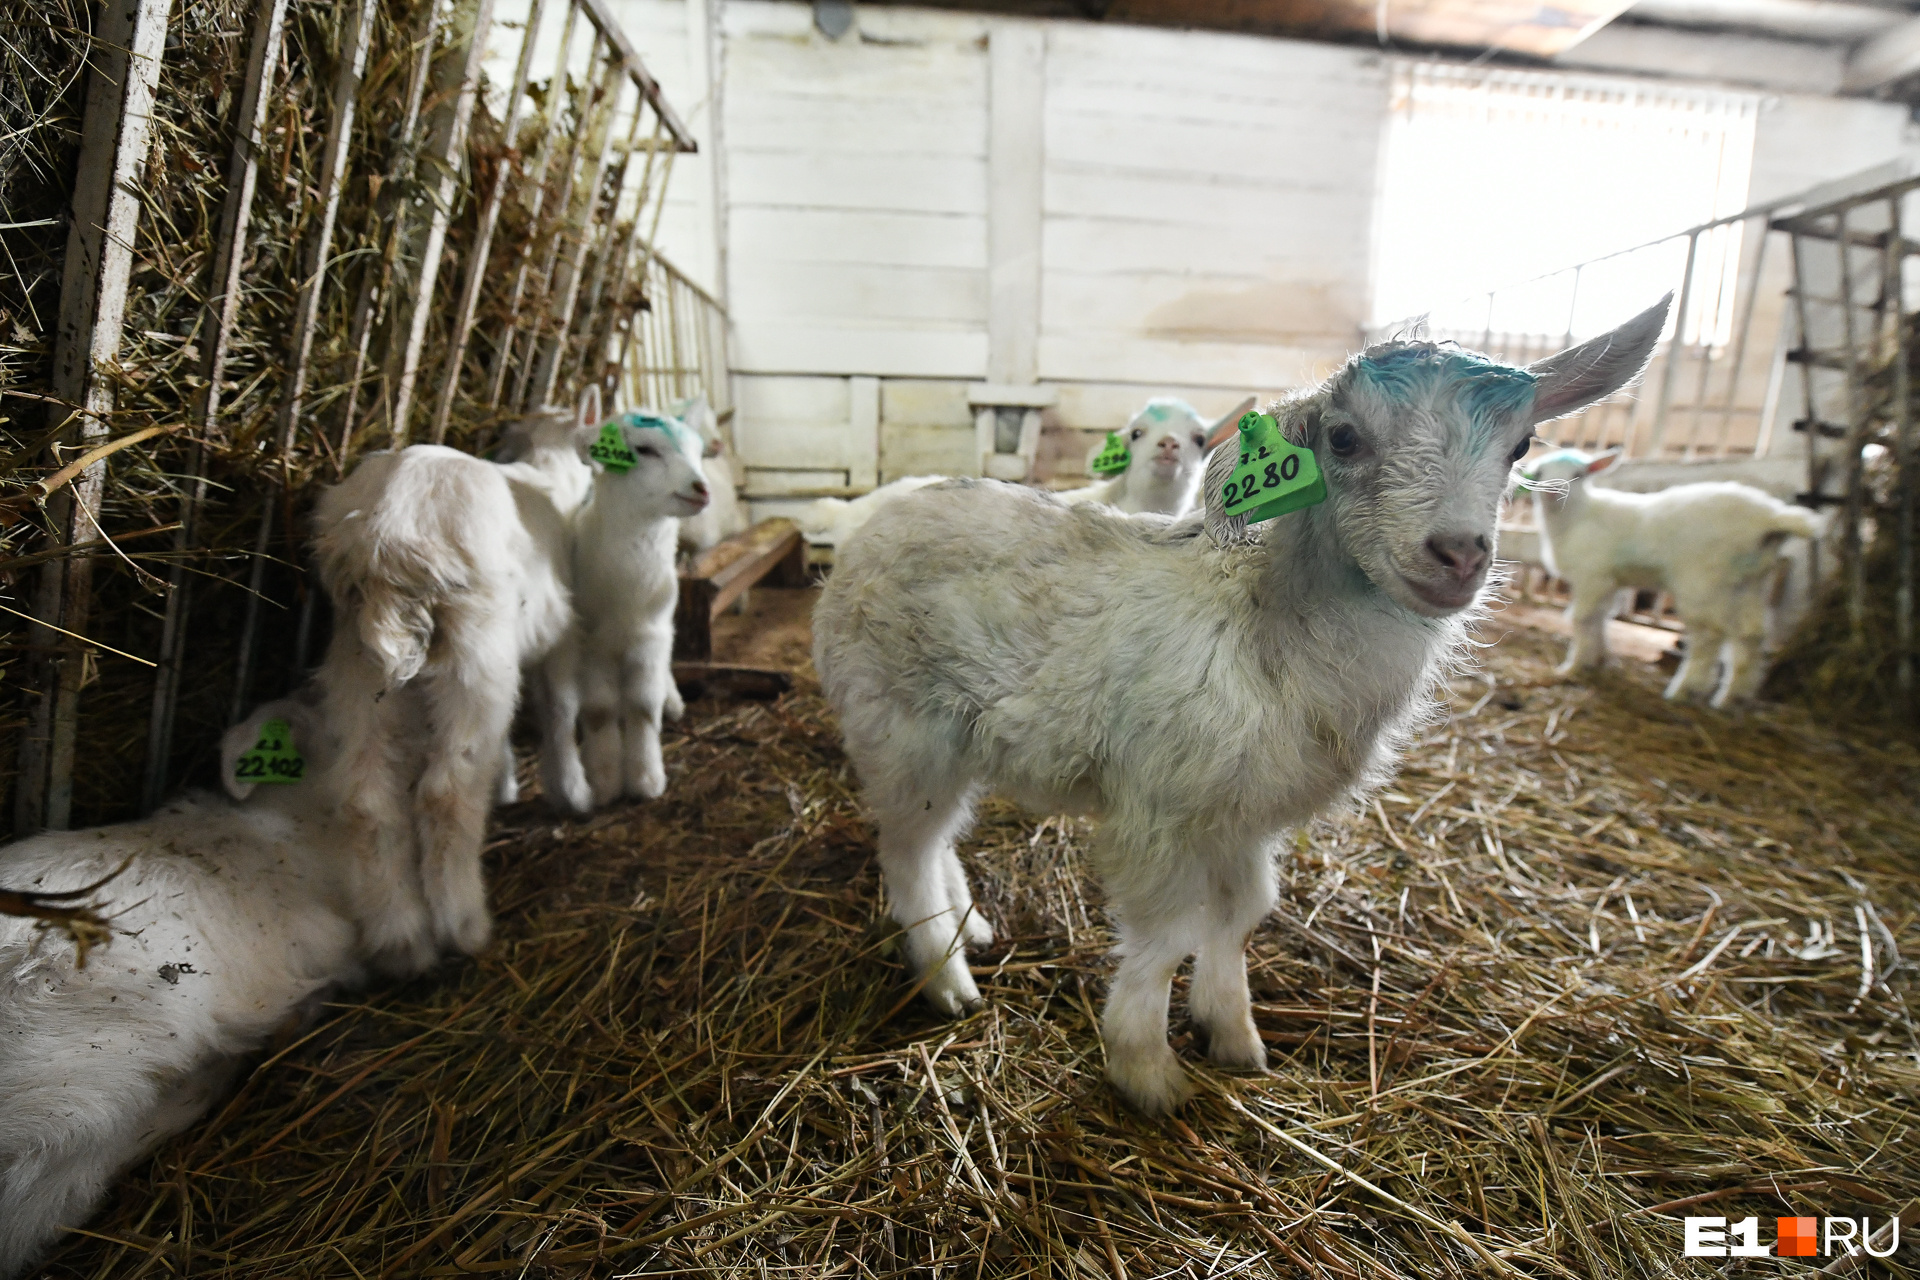 Когда Александр и его напарник Антон покупали коз, они не знали, что с четвертого месяца беременности козы перестают давать молоко до самого окота (рождения козлят)